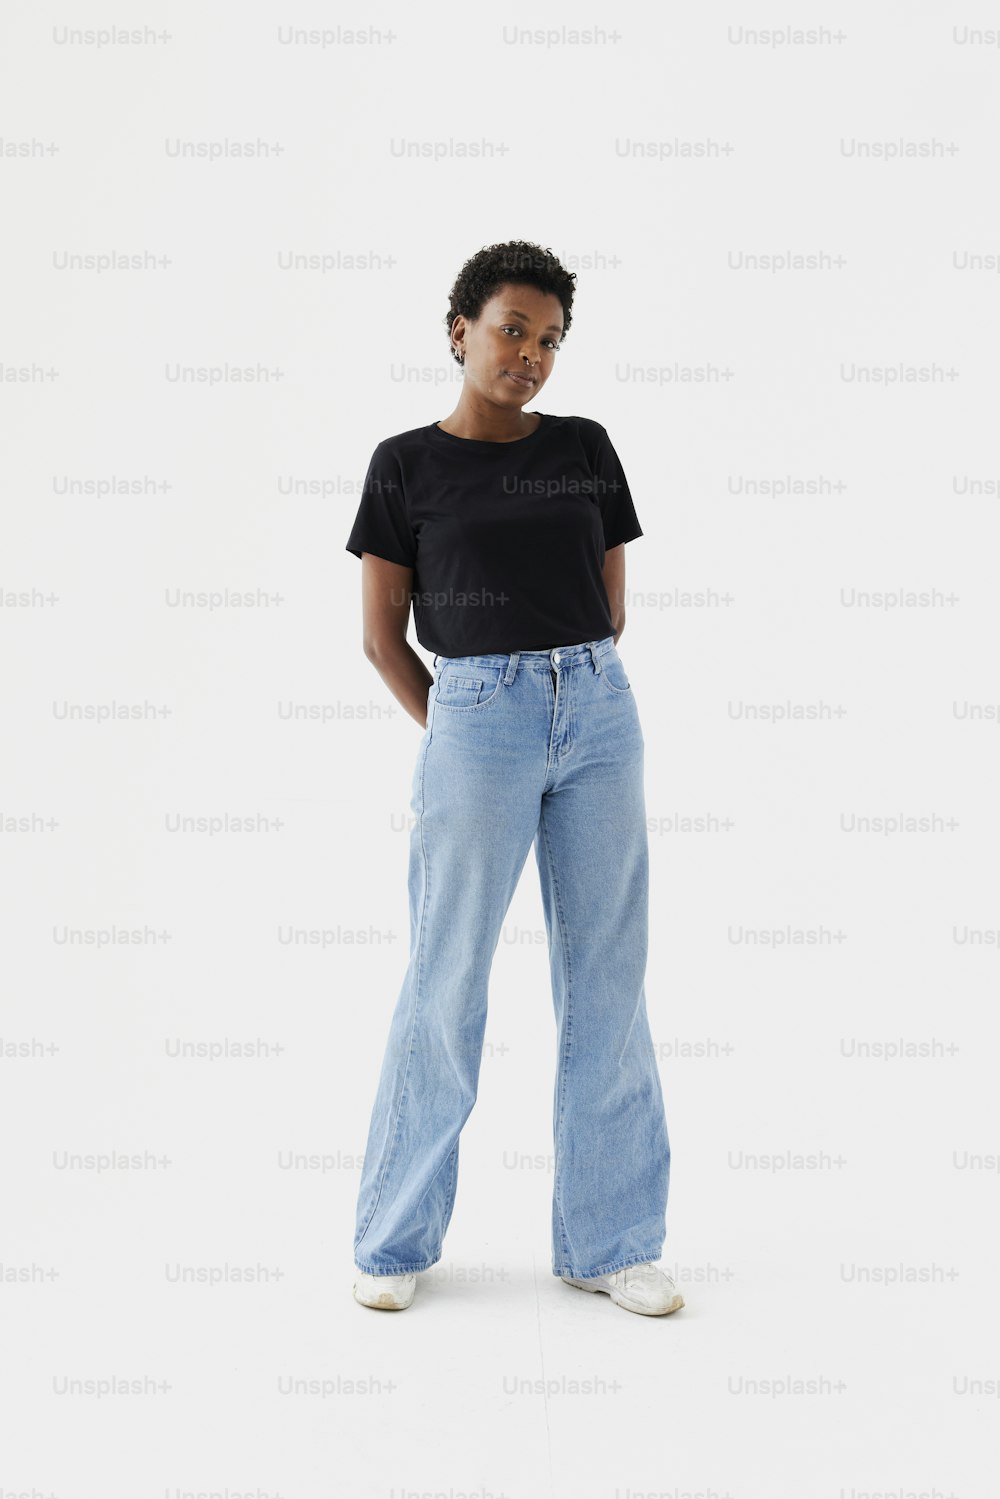 Una mujer con una camiseta negra y jeans azul claro